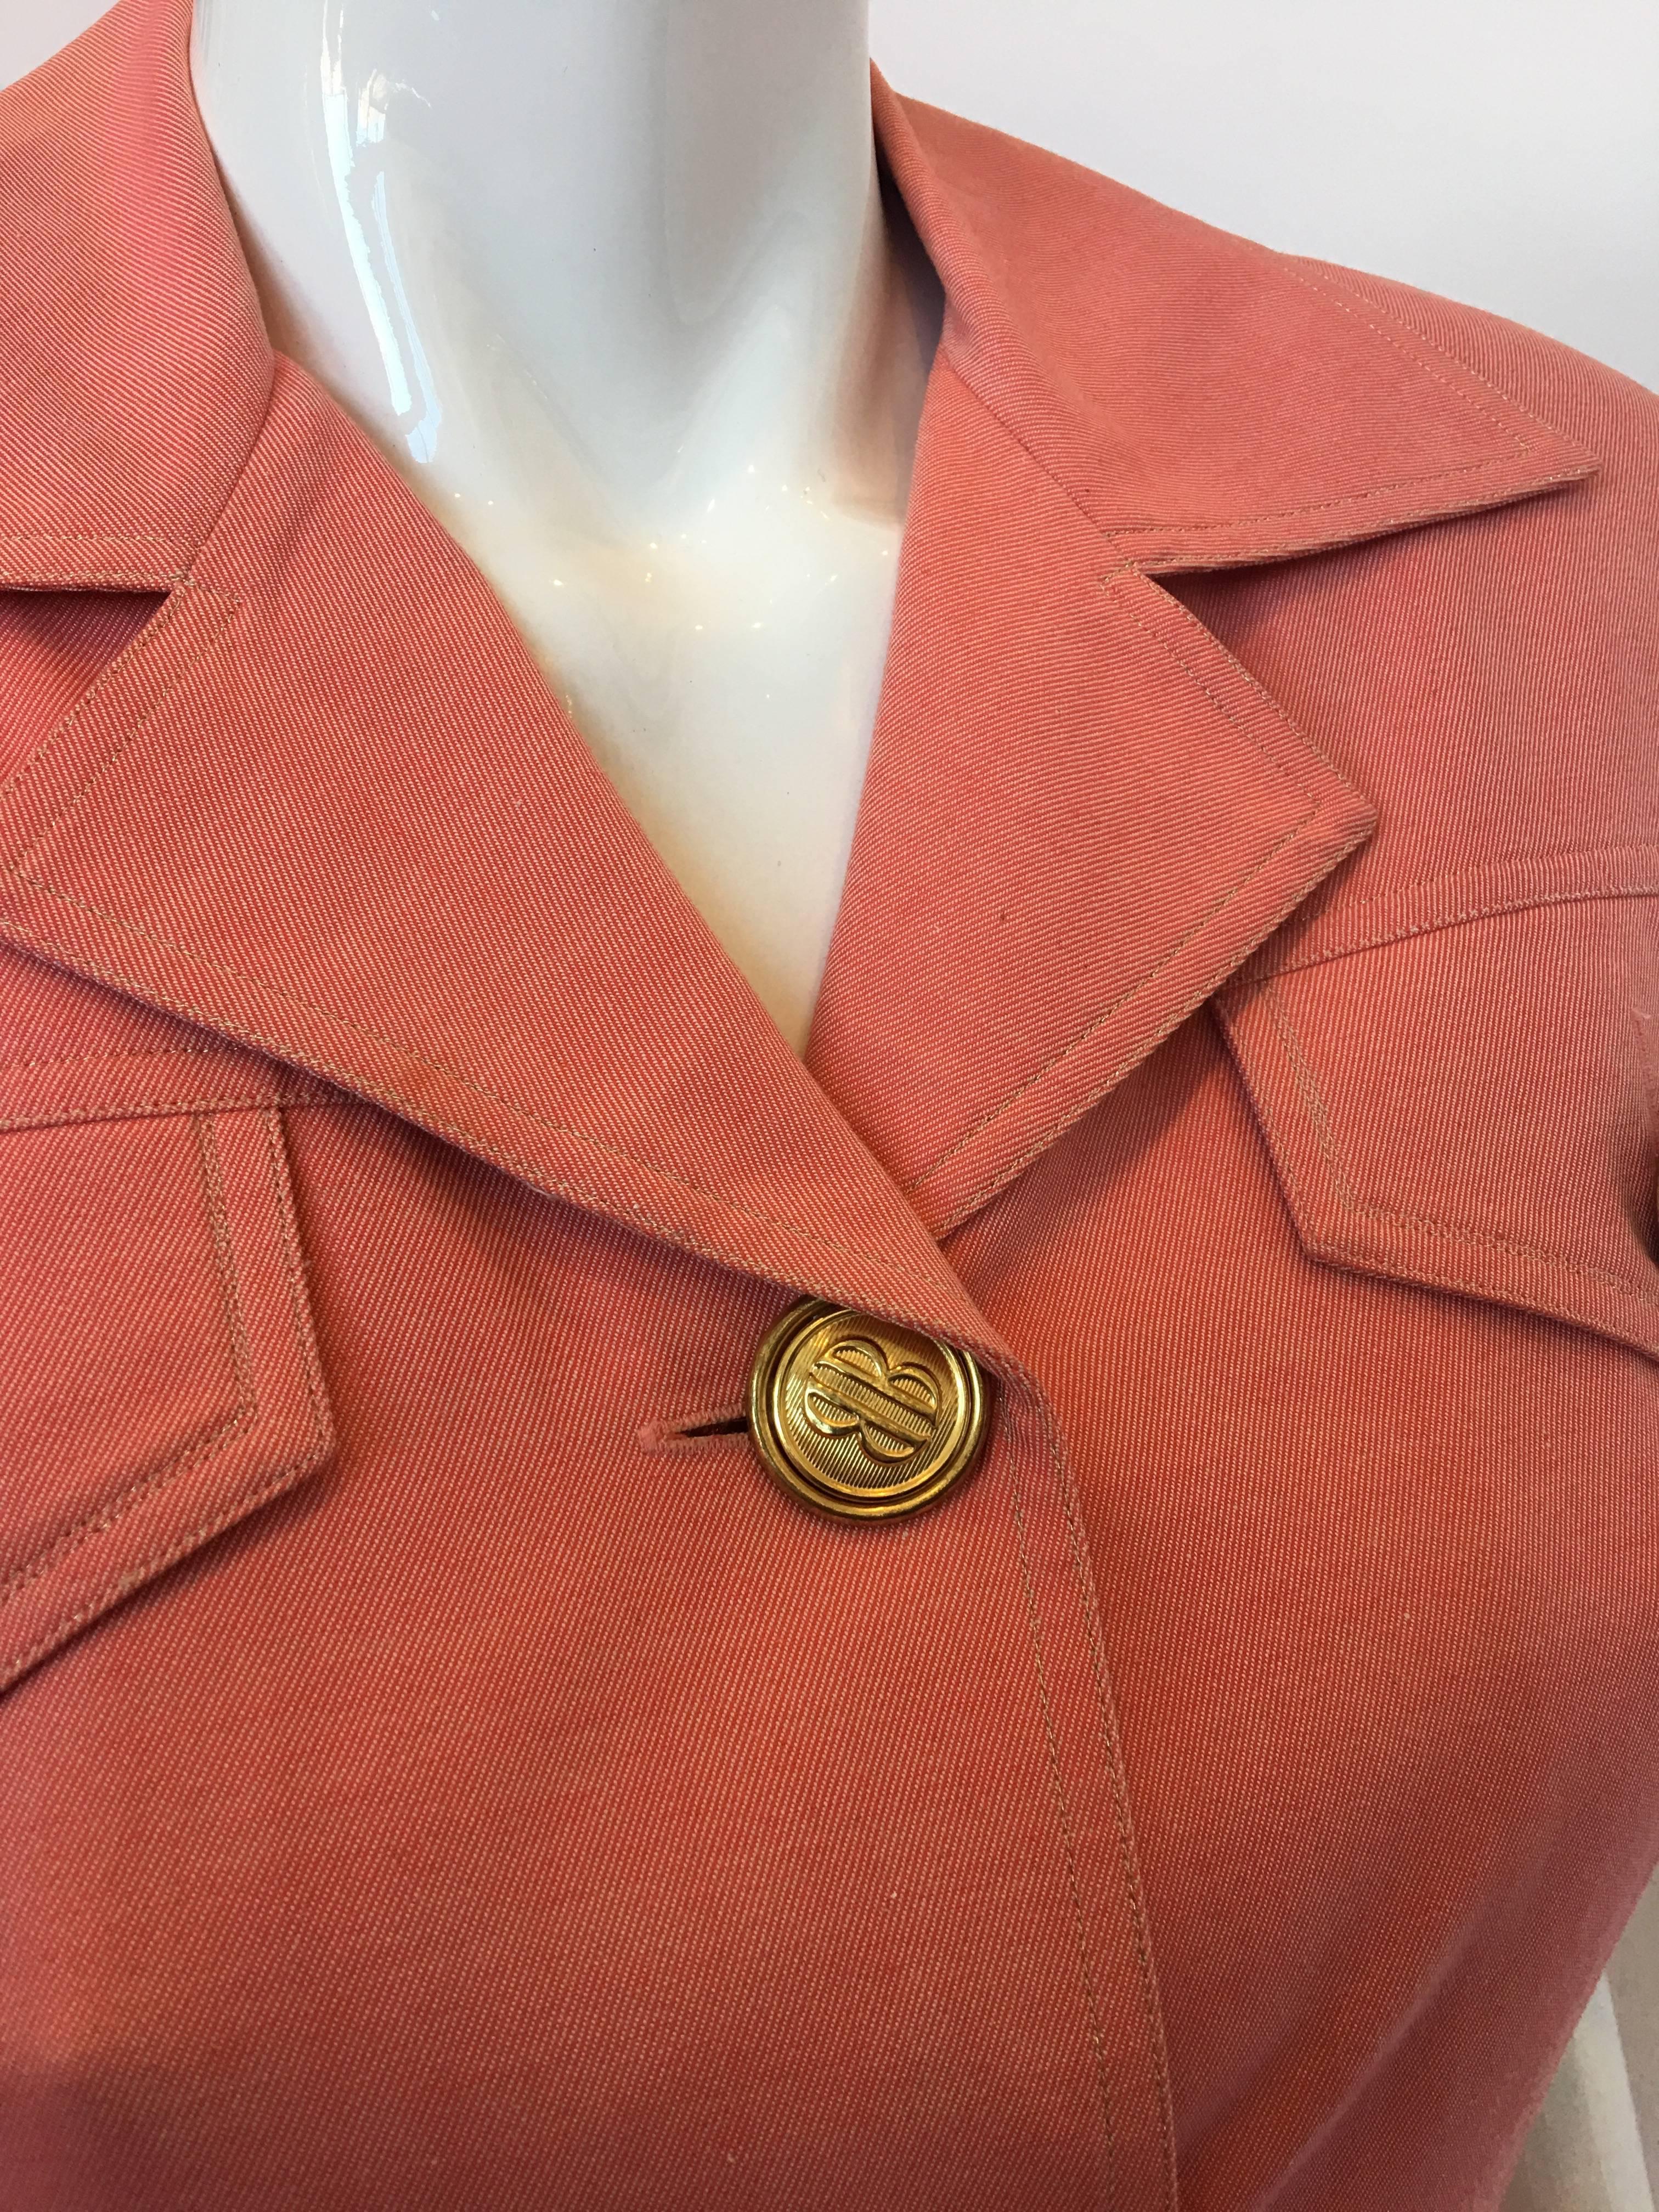 Bill Blass Salmon Pink Button Up Uniform Suit Dress, 1990s  2